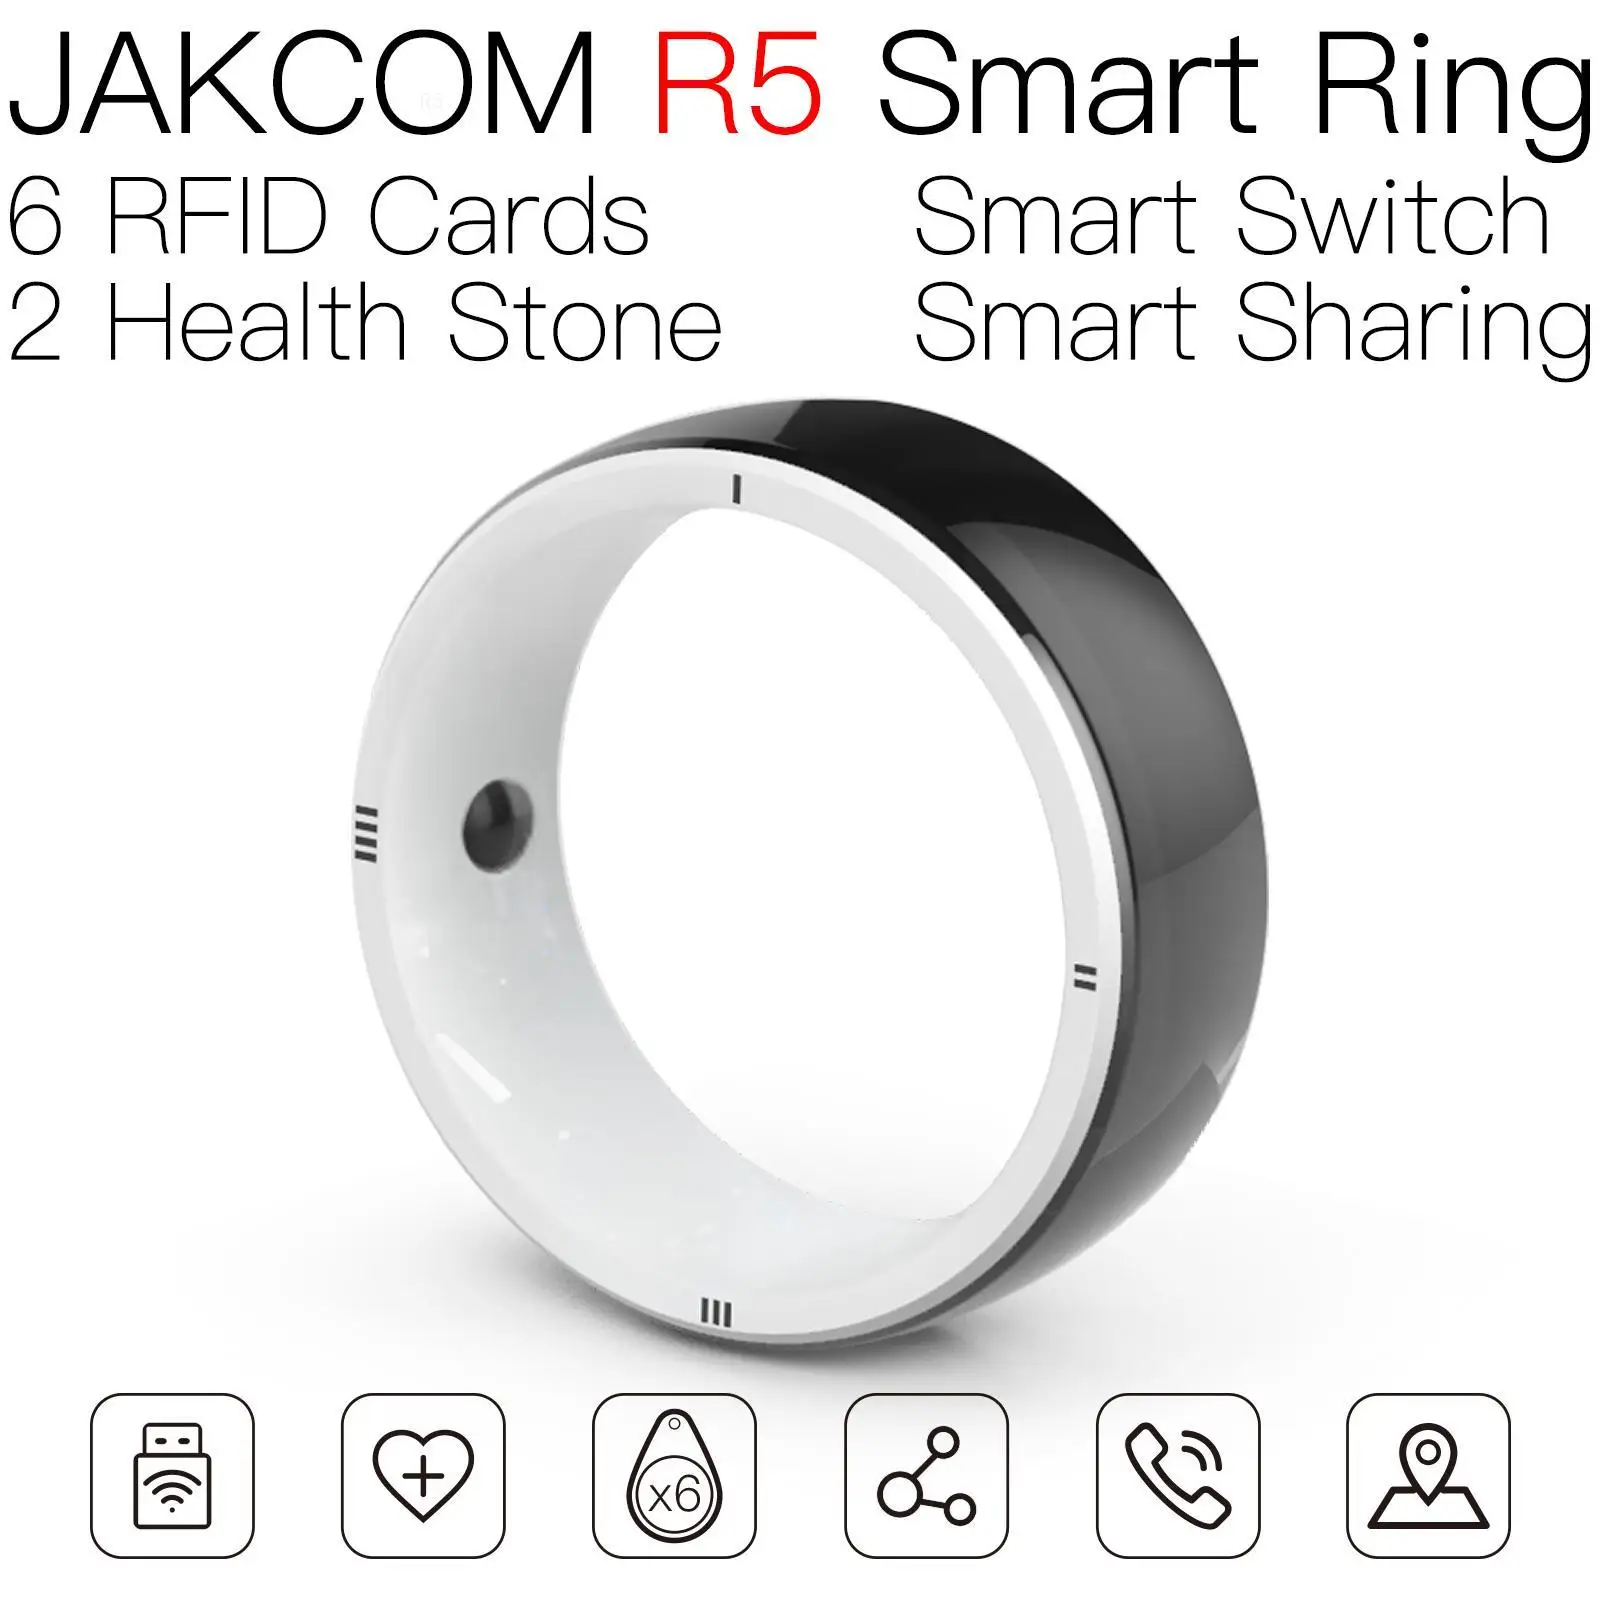 

JAKCOM R5 Smart Ring Newer than m1 rfid key fob tag s50 inkjet 215 efill tower tags dallas copy nfc rewriteble sticker